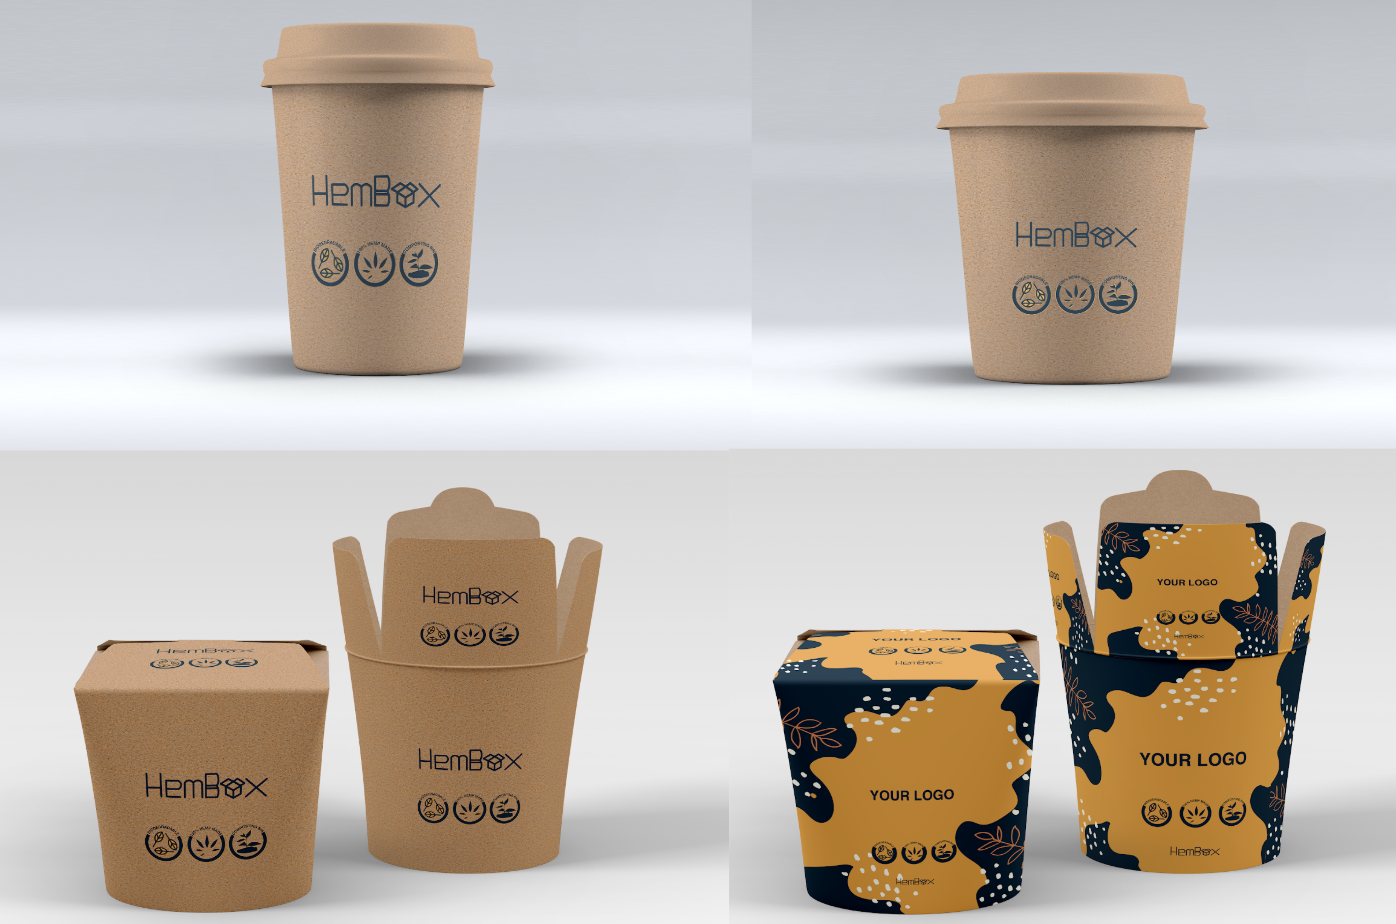 Prototype of Hembox products